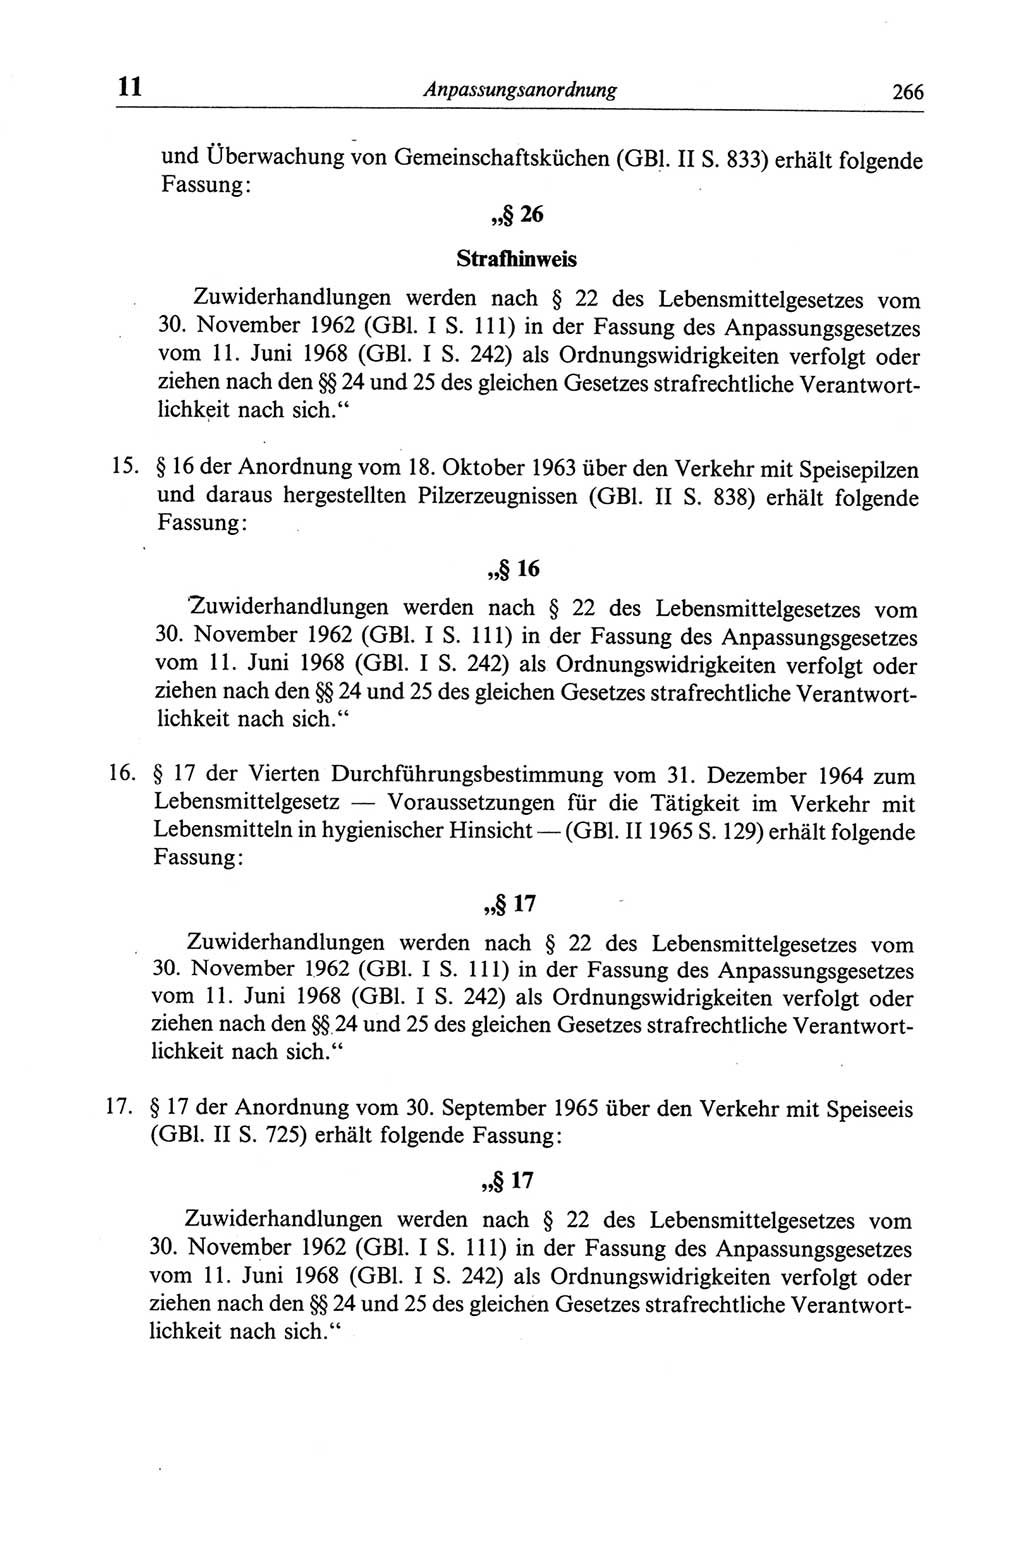 Strafgesetzbuch (StGB) der Deutschen Demokratischen Republik (DDR) und angrenzende Gesetze und Bestimmungen 1968, Seite 266 (StGB Ges. Best. DDR 1968, S. 266)